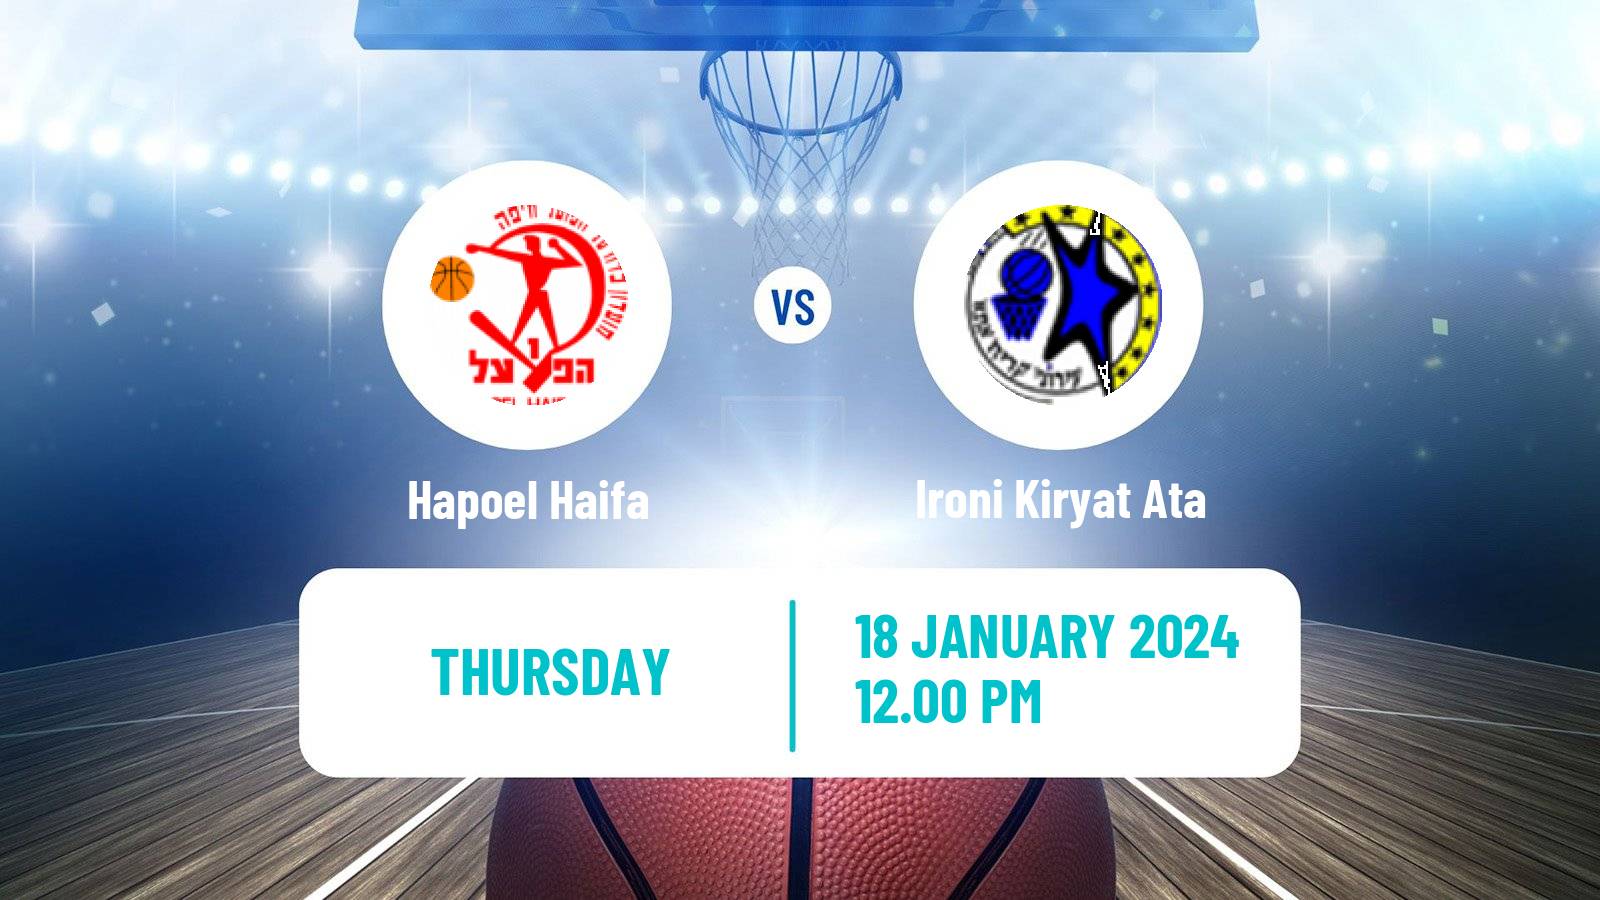 Basketball Israeli Basketball Super League Hapoel Haifa - Ironi Kiryat Ata